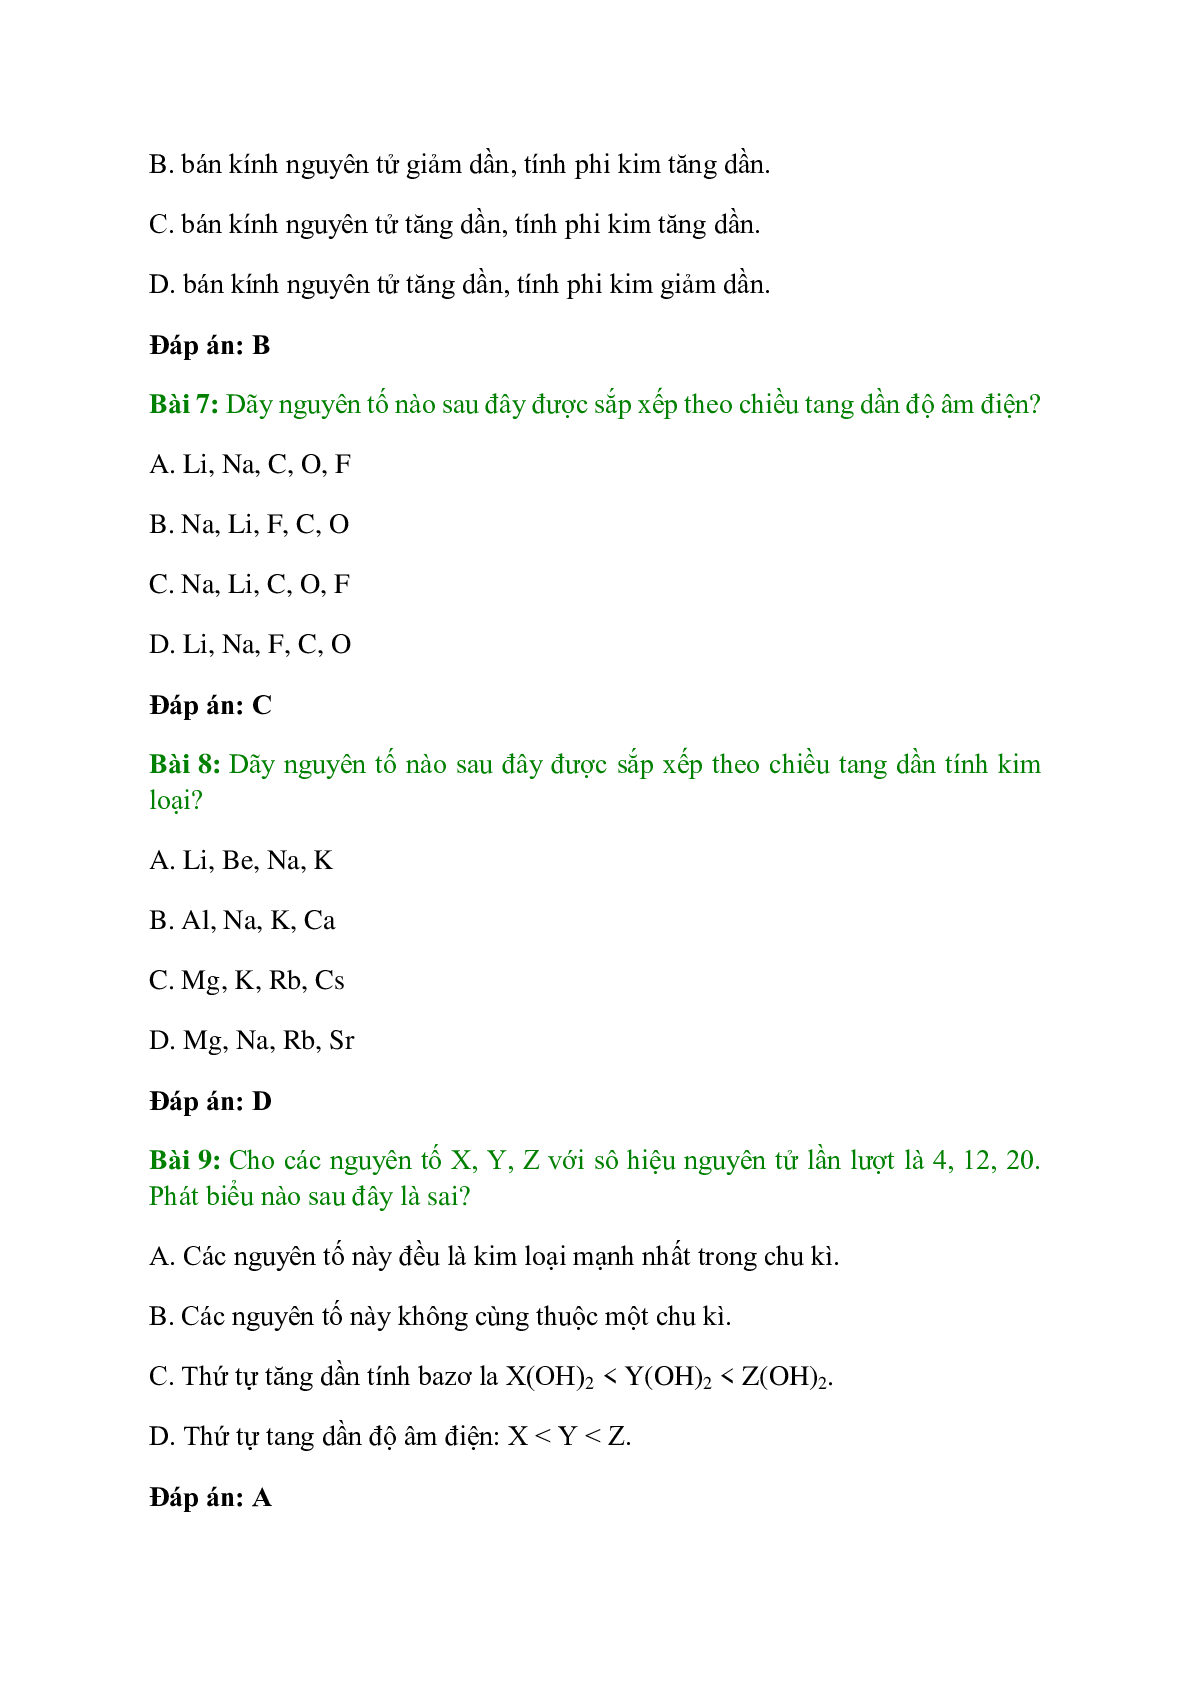 Trắc nghiệm Sự biến đổi tuần hoàn tính chất của các nguyên tố hóa học - Định luật tuần hoàn có đáp án - Hóa học 10 (trang 3)